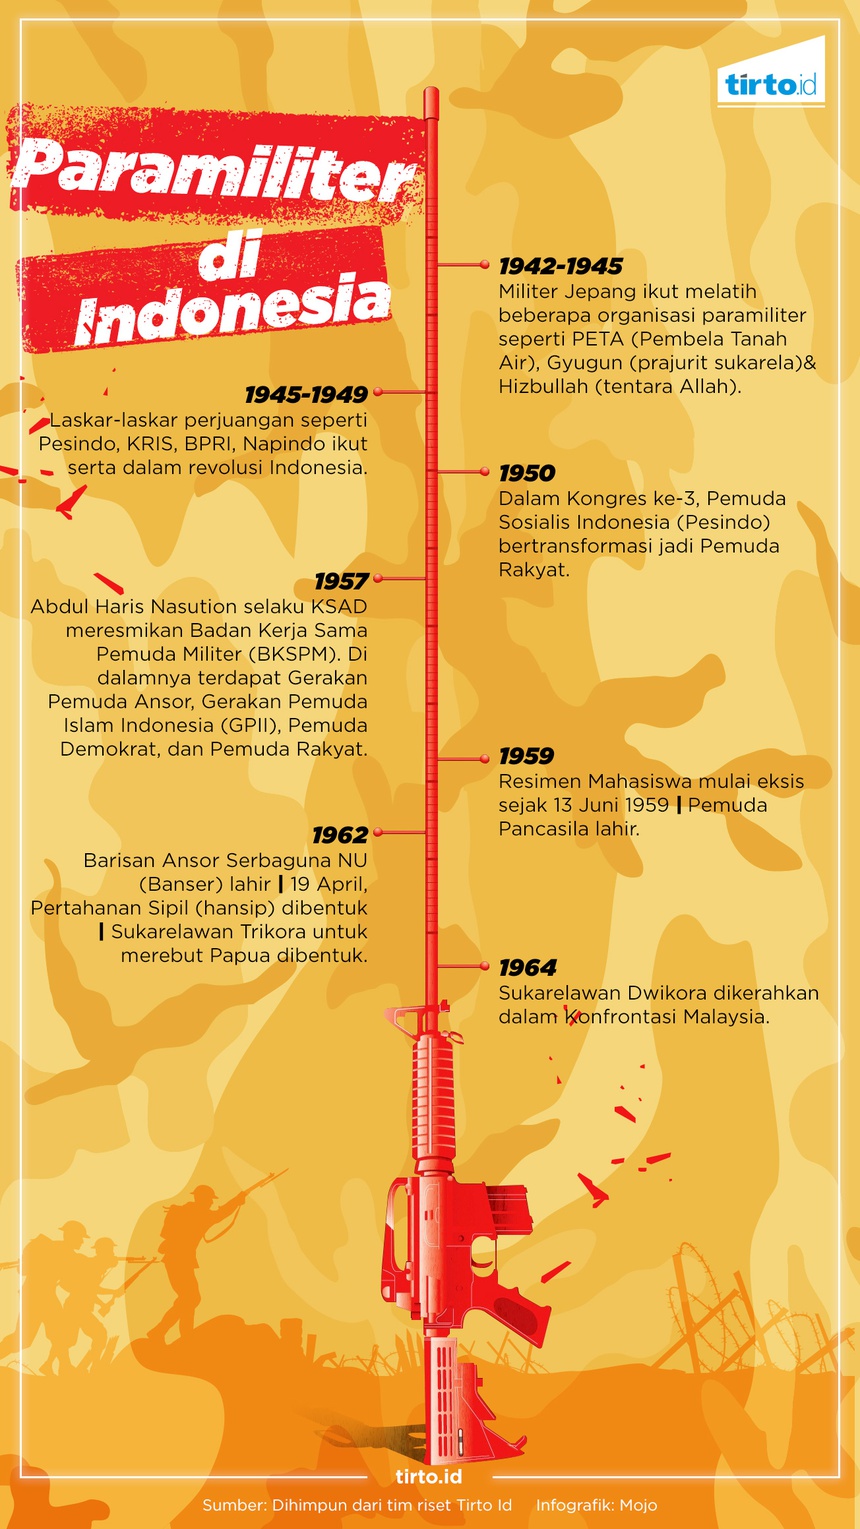 Parade Paramiliter dalam Sejarah Indonesia